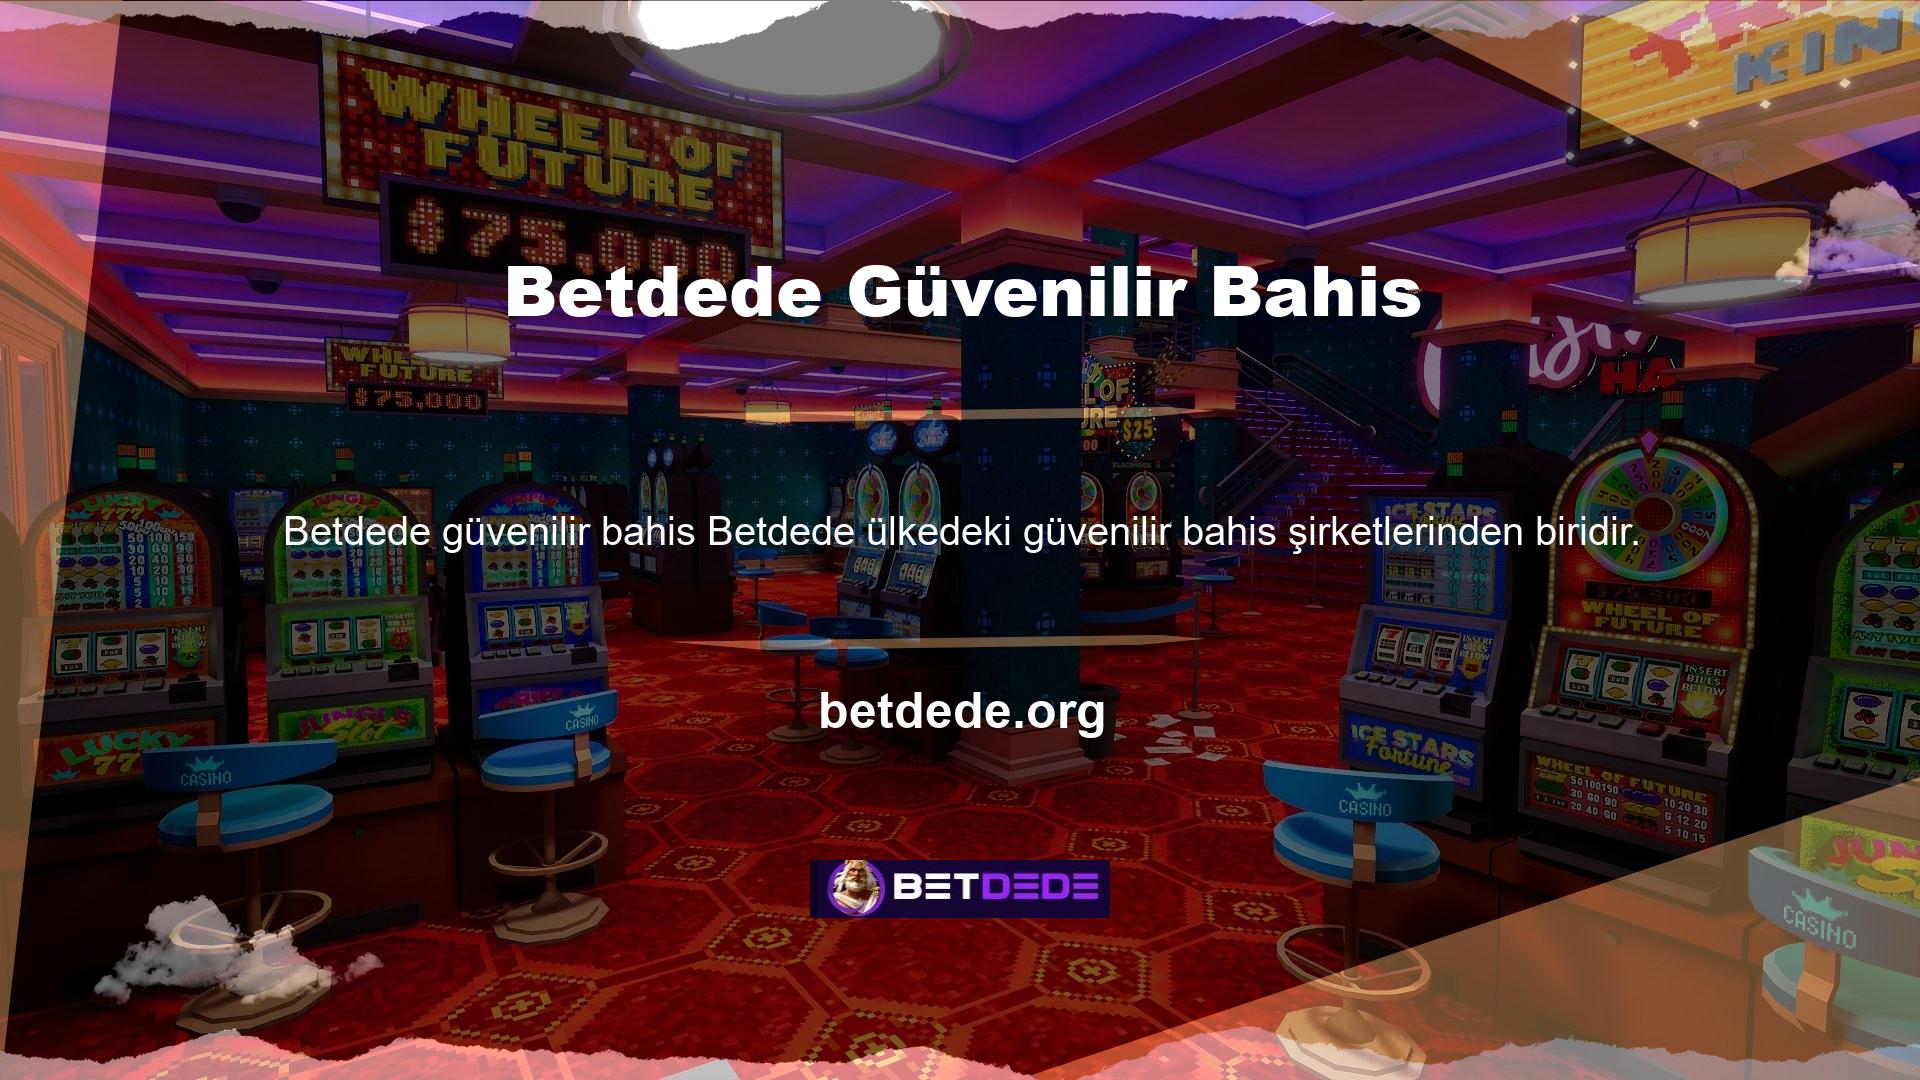 Betdede, casino oyuncularının tüm Türk casino oyunları için güvendiği ve sevdiği bahis şirketidir